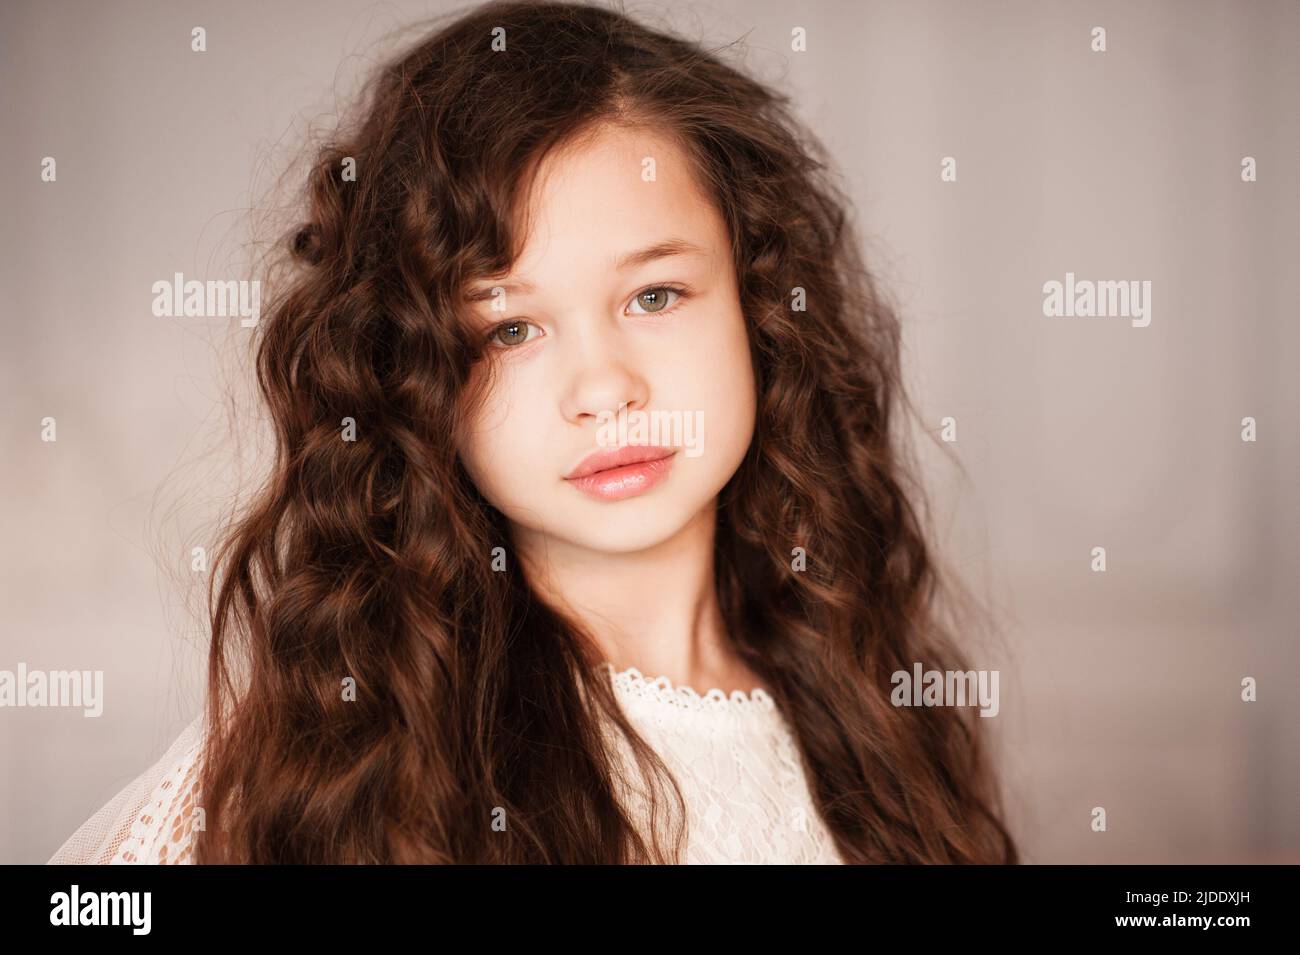 Cute schöne Kind Mädchen 10-12 Jahre alt mit langen dunklen blonden Haaren im Zimmer Nahaufnahme. Porträt eines jungen Teenagers. Kindheit. Stockfoto